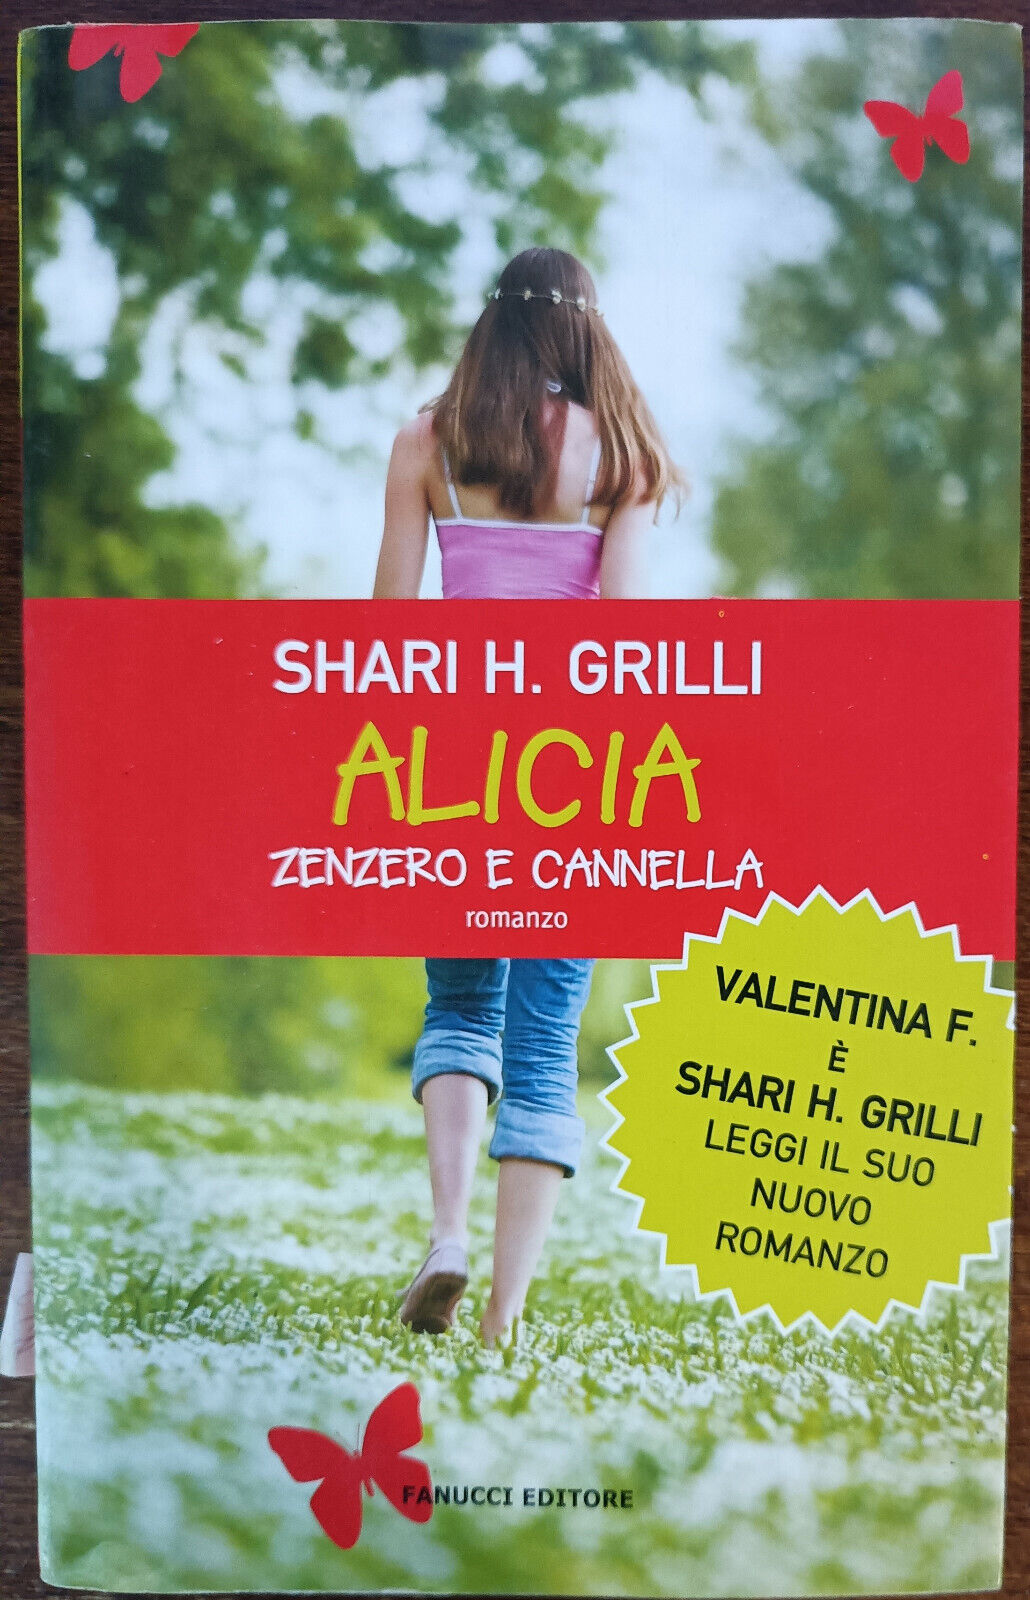 Alicia zenzero e cannella - Shari H. Grilli - Fanucci, 2009 - A